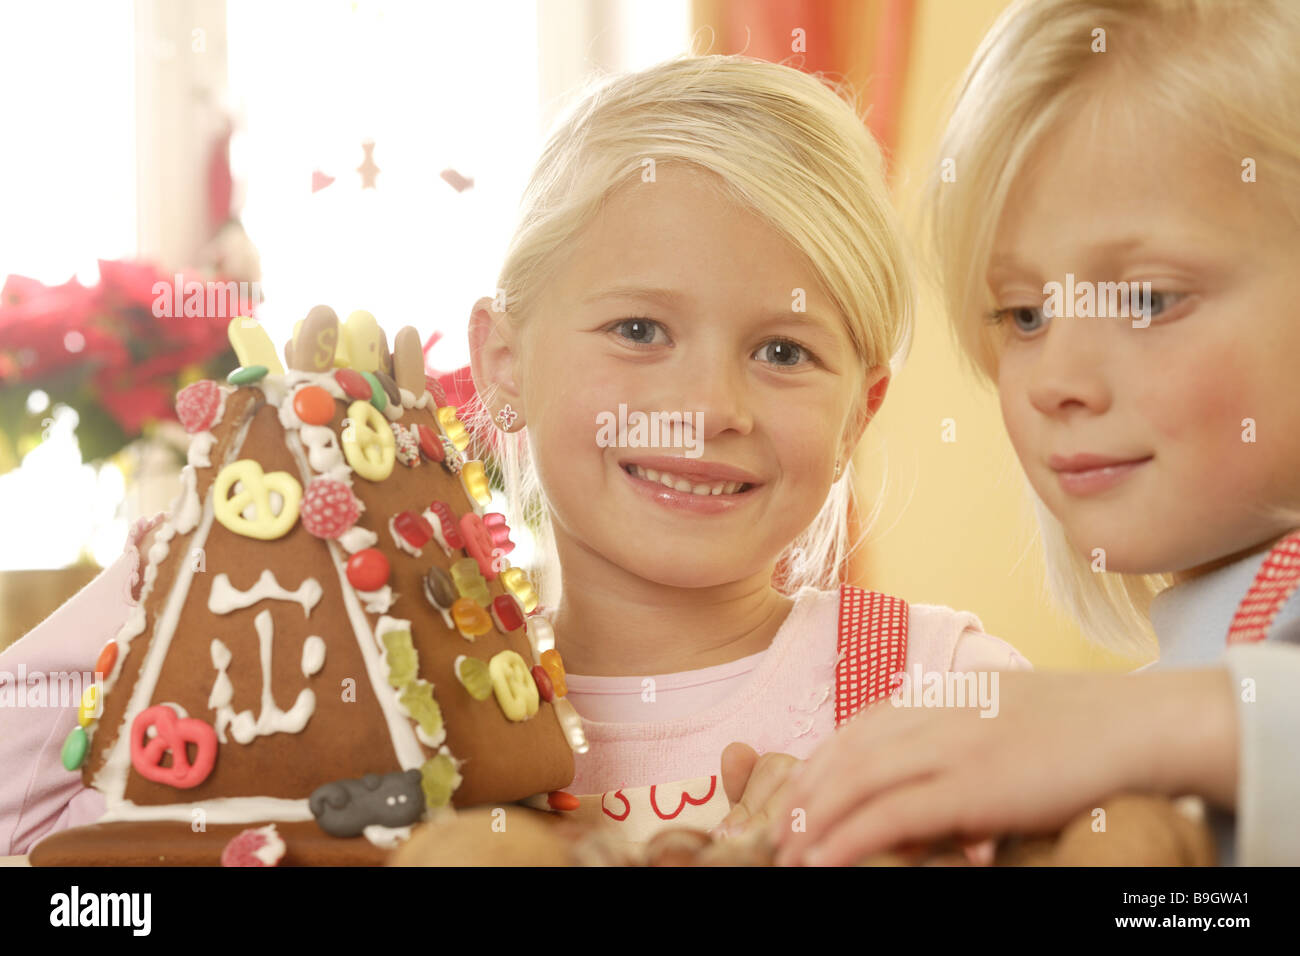 Deux fille avent gingerbread-chambre de l'artisanat Banque D'Images